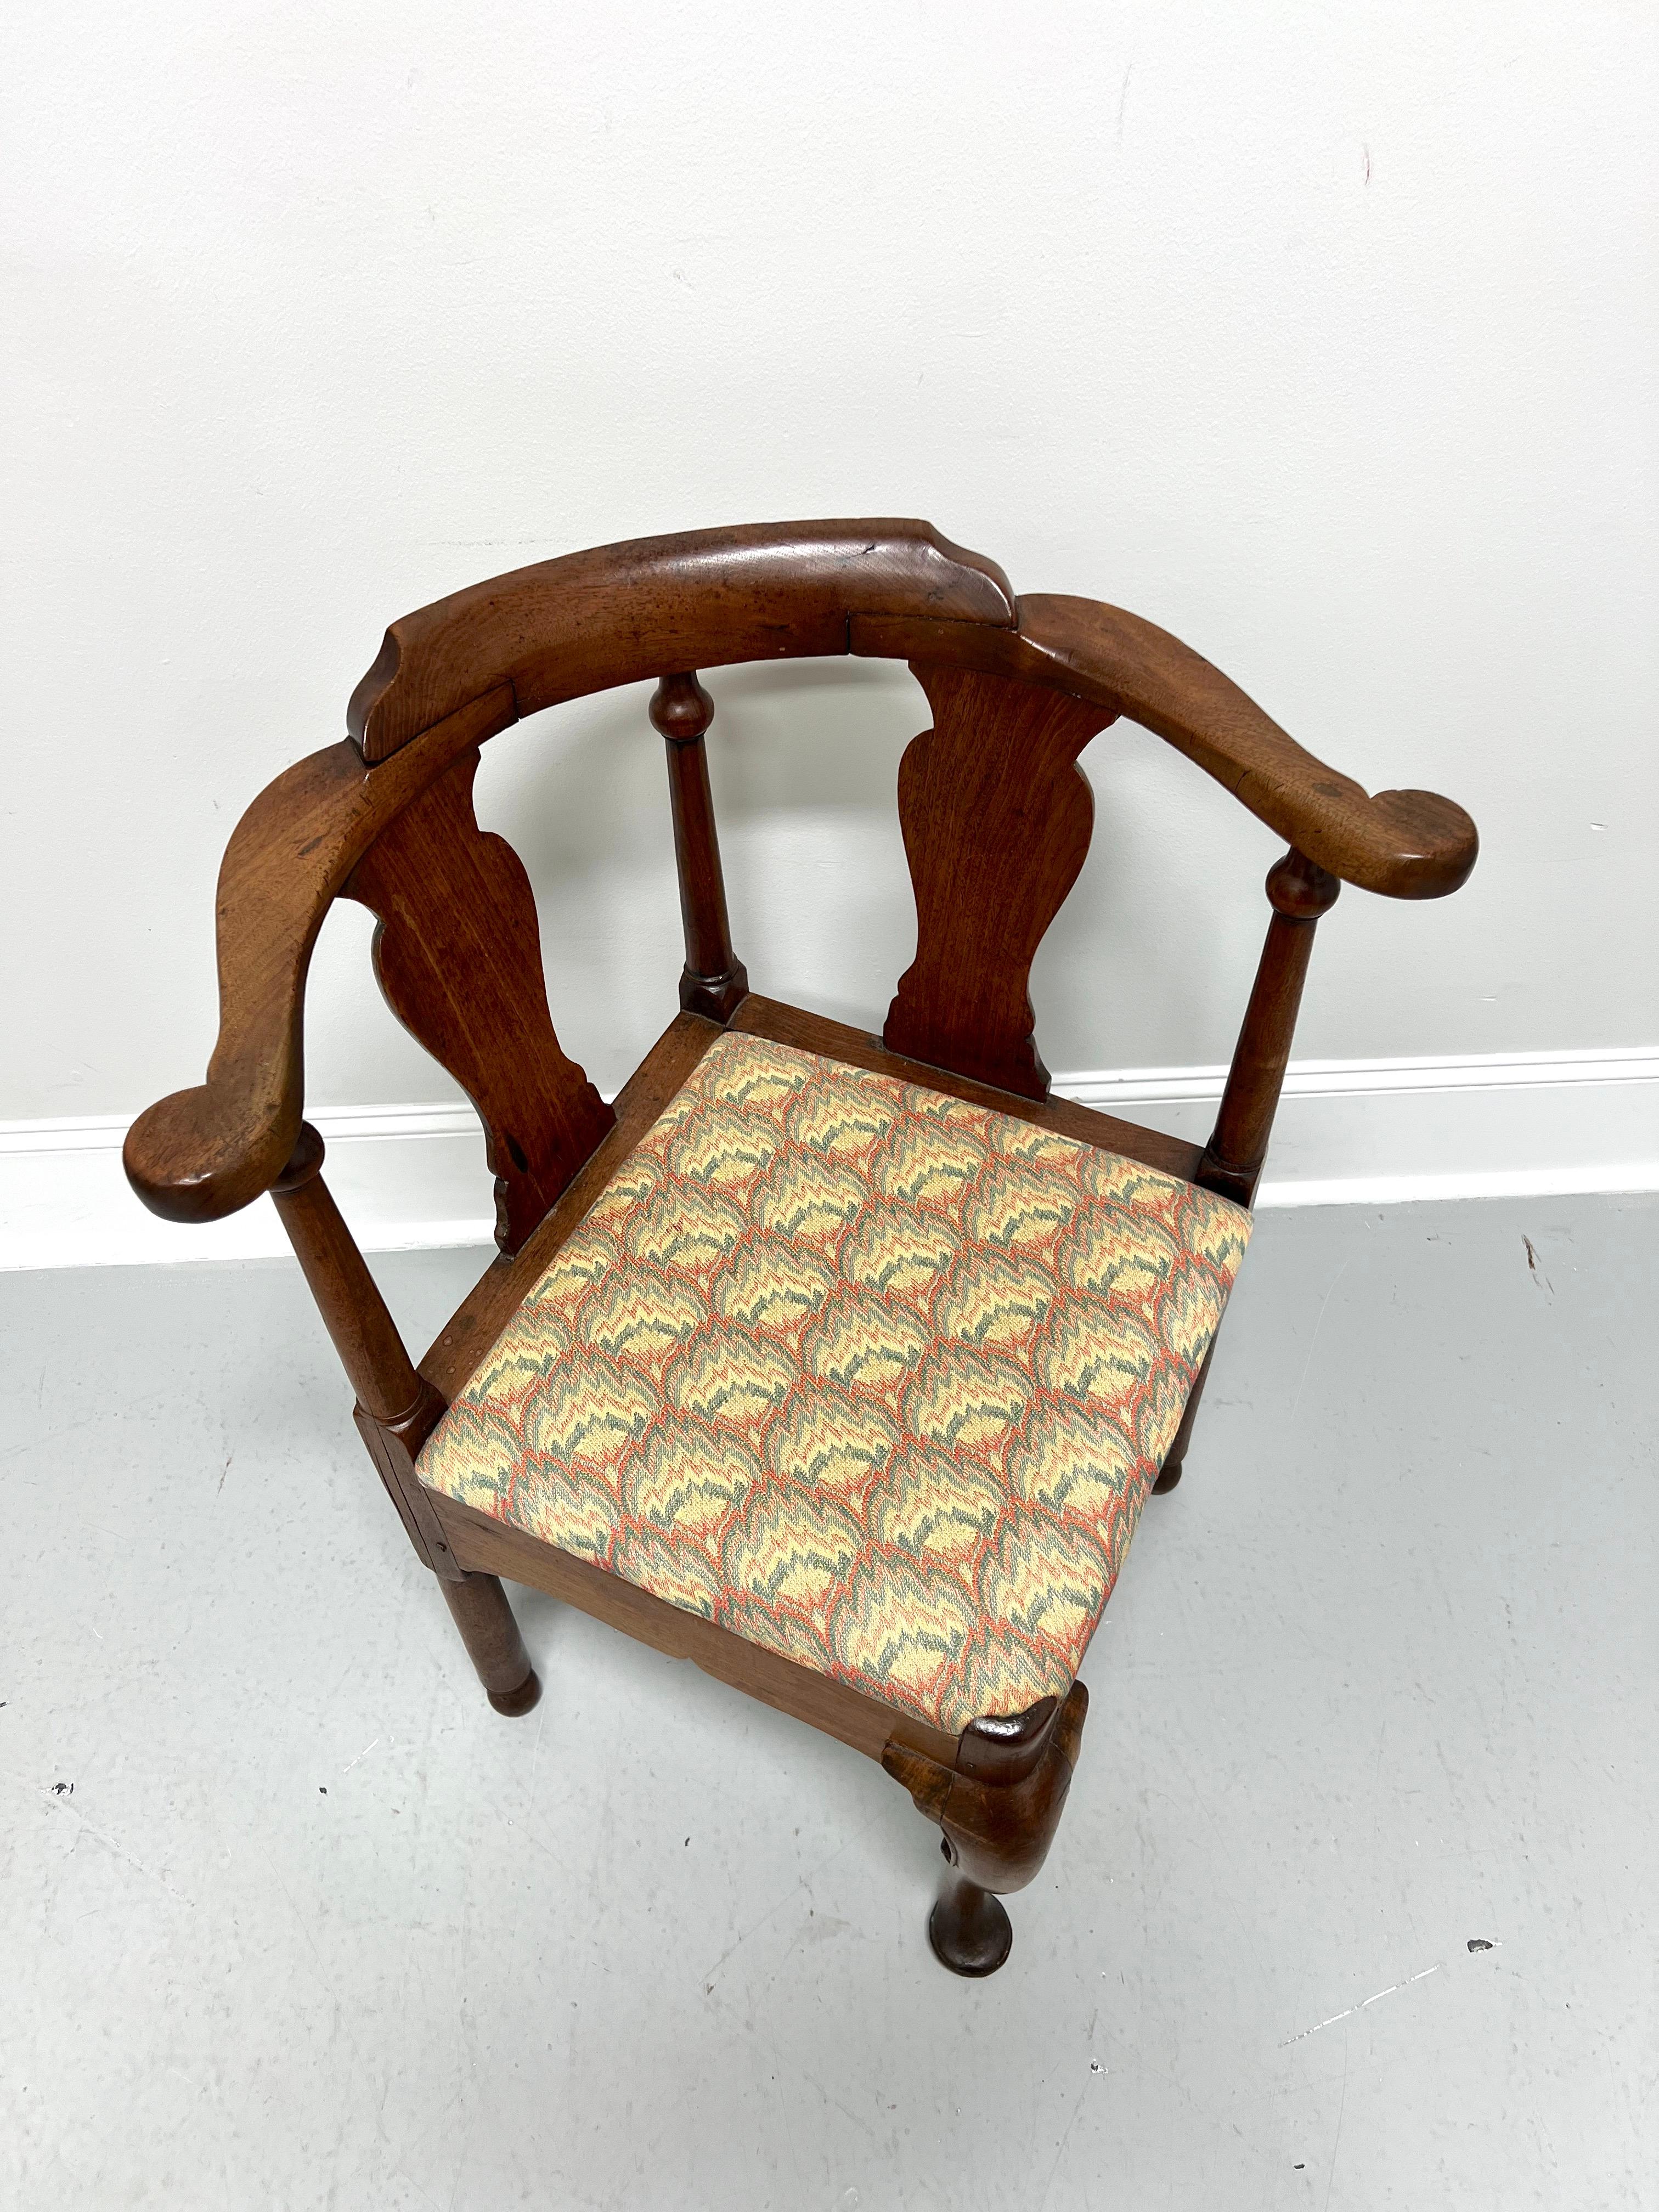 Ancienne chaise d'angle du 18e siècle de style Coloni américain. Fabriqué à la main en noyer massif, dossier sculpté avec poteaux tournés, siège rembourré en tissu au point de flamme, tablier sculpté, pied central avant en cabriole avec pied en pad,